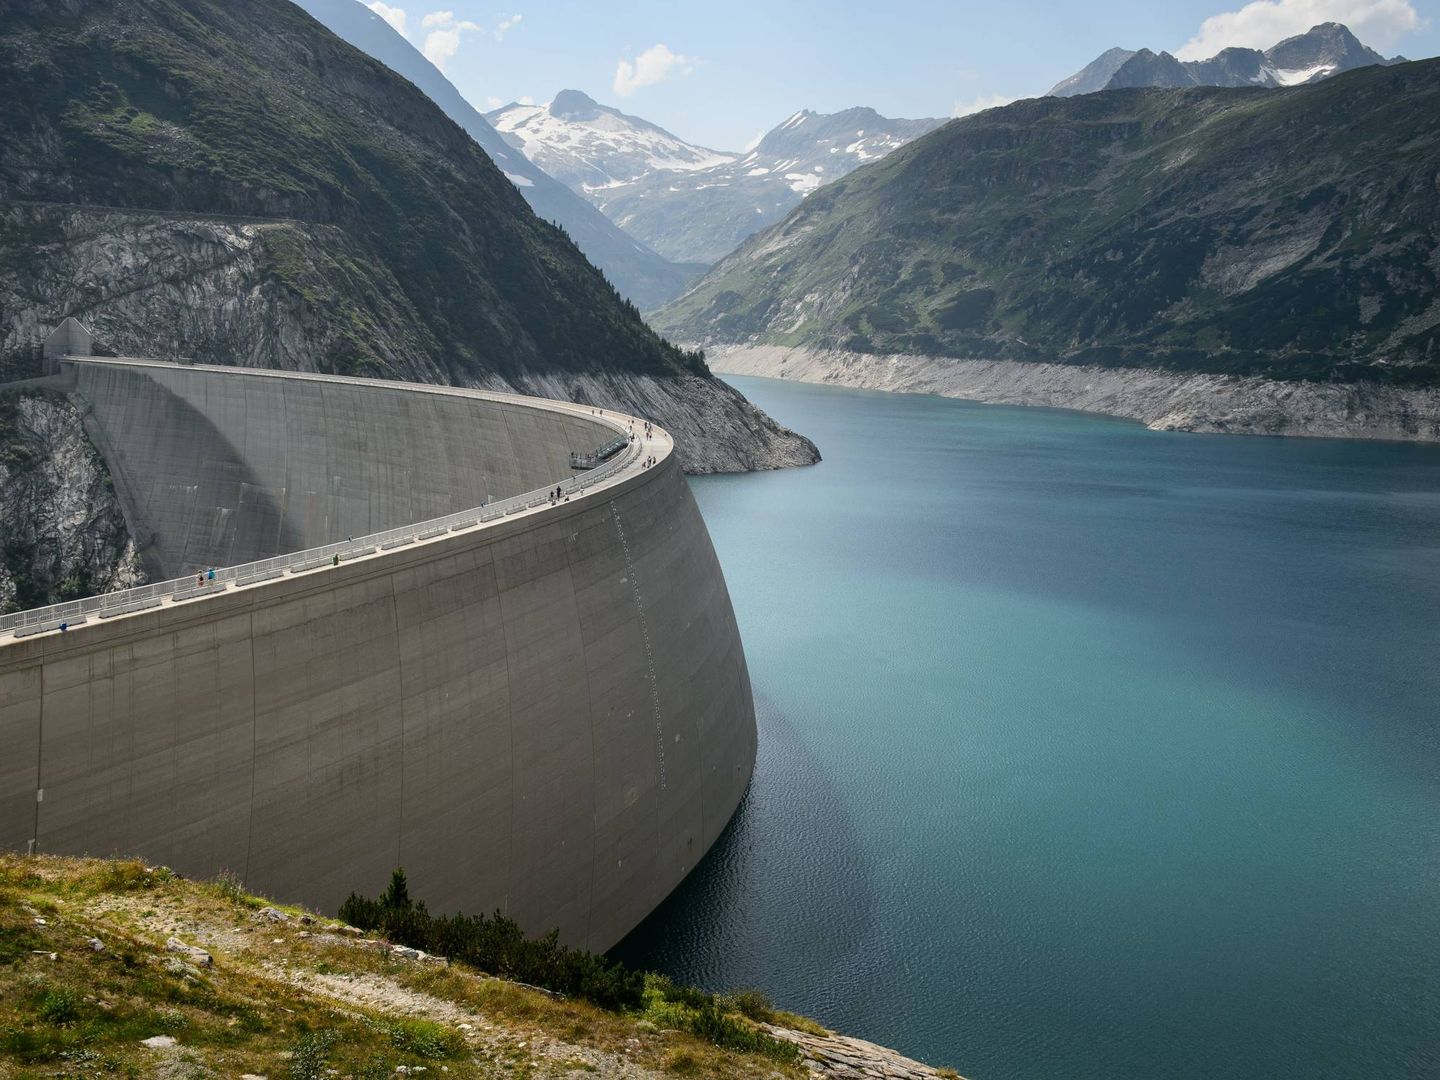 Las centrales hidroeléctricas, junto con las nucleares, serán las más perjudicadas. (Unsplash)